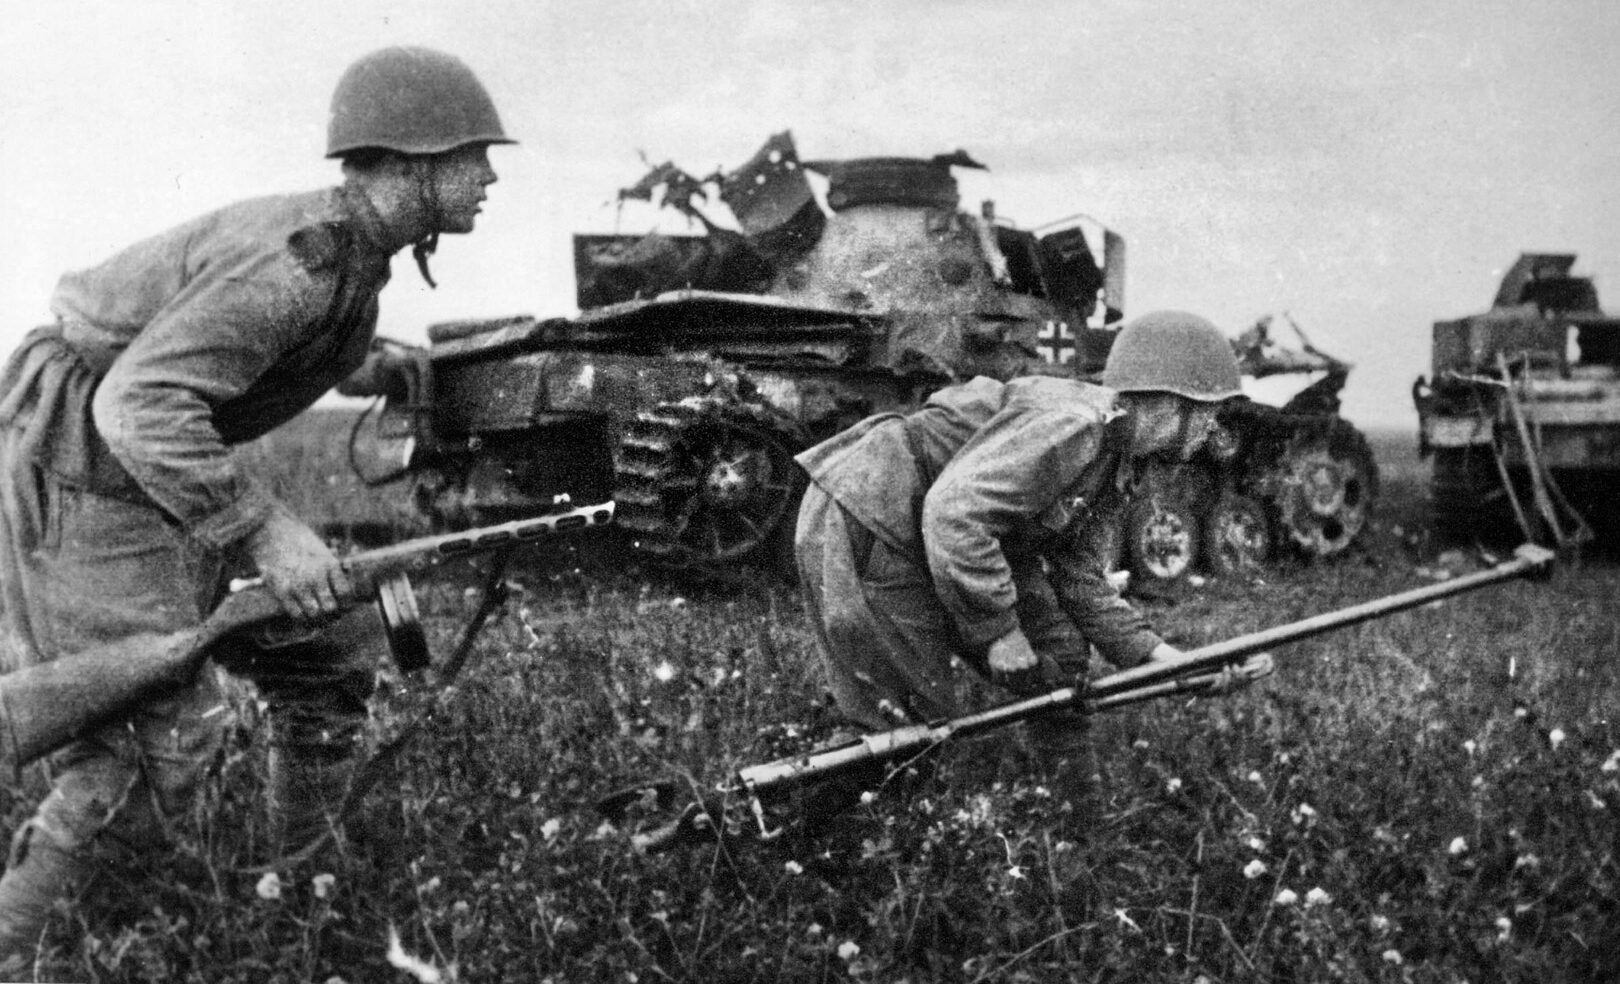 苏联步兵蹲下身子，冲过德国坦克的残骸。右边的士兵拿着一支重型反坦克步枪，这支步枪对德国的中型和重型坦克毫无效果。